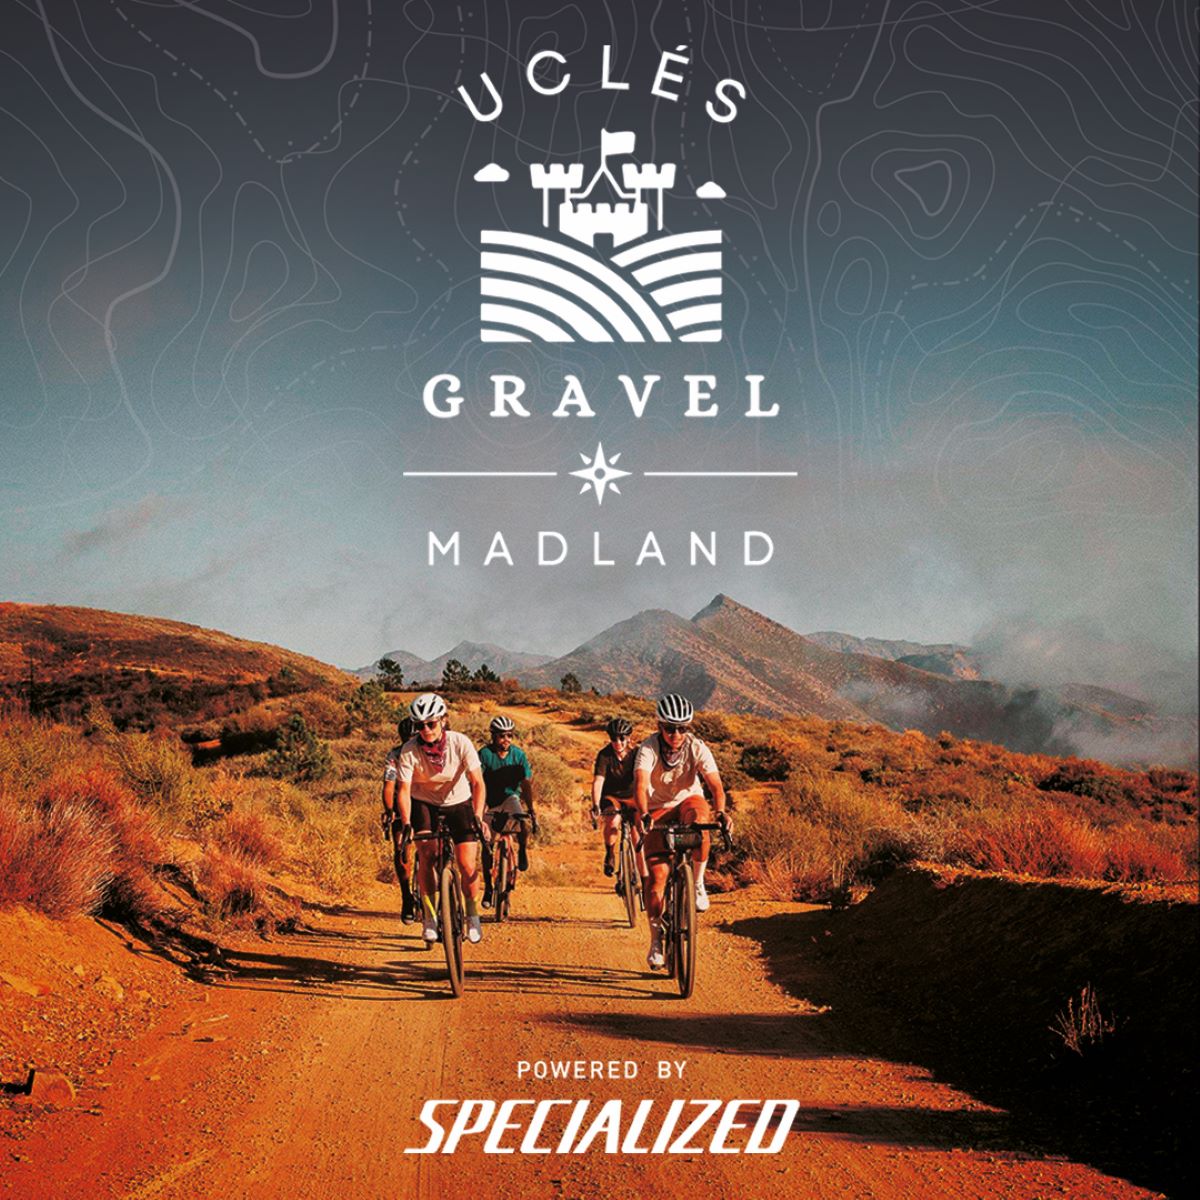 Llega la 1ª edición de Madland-Camino de Uclés: 163 km de gravel entre Madrid y Cuenca